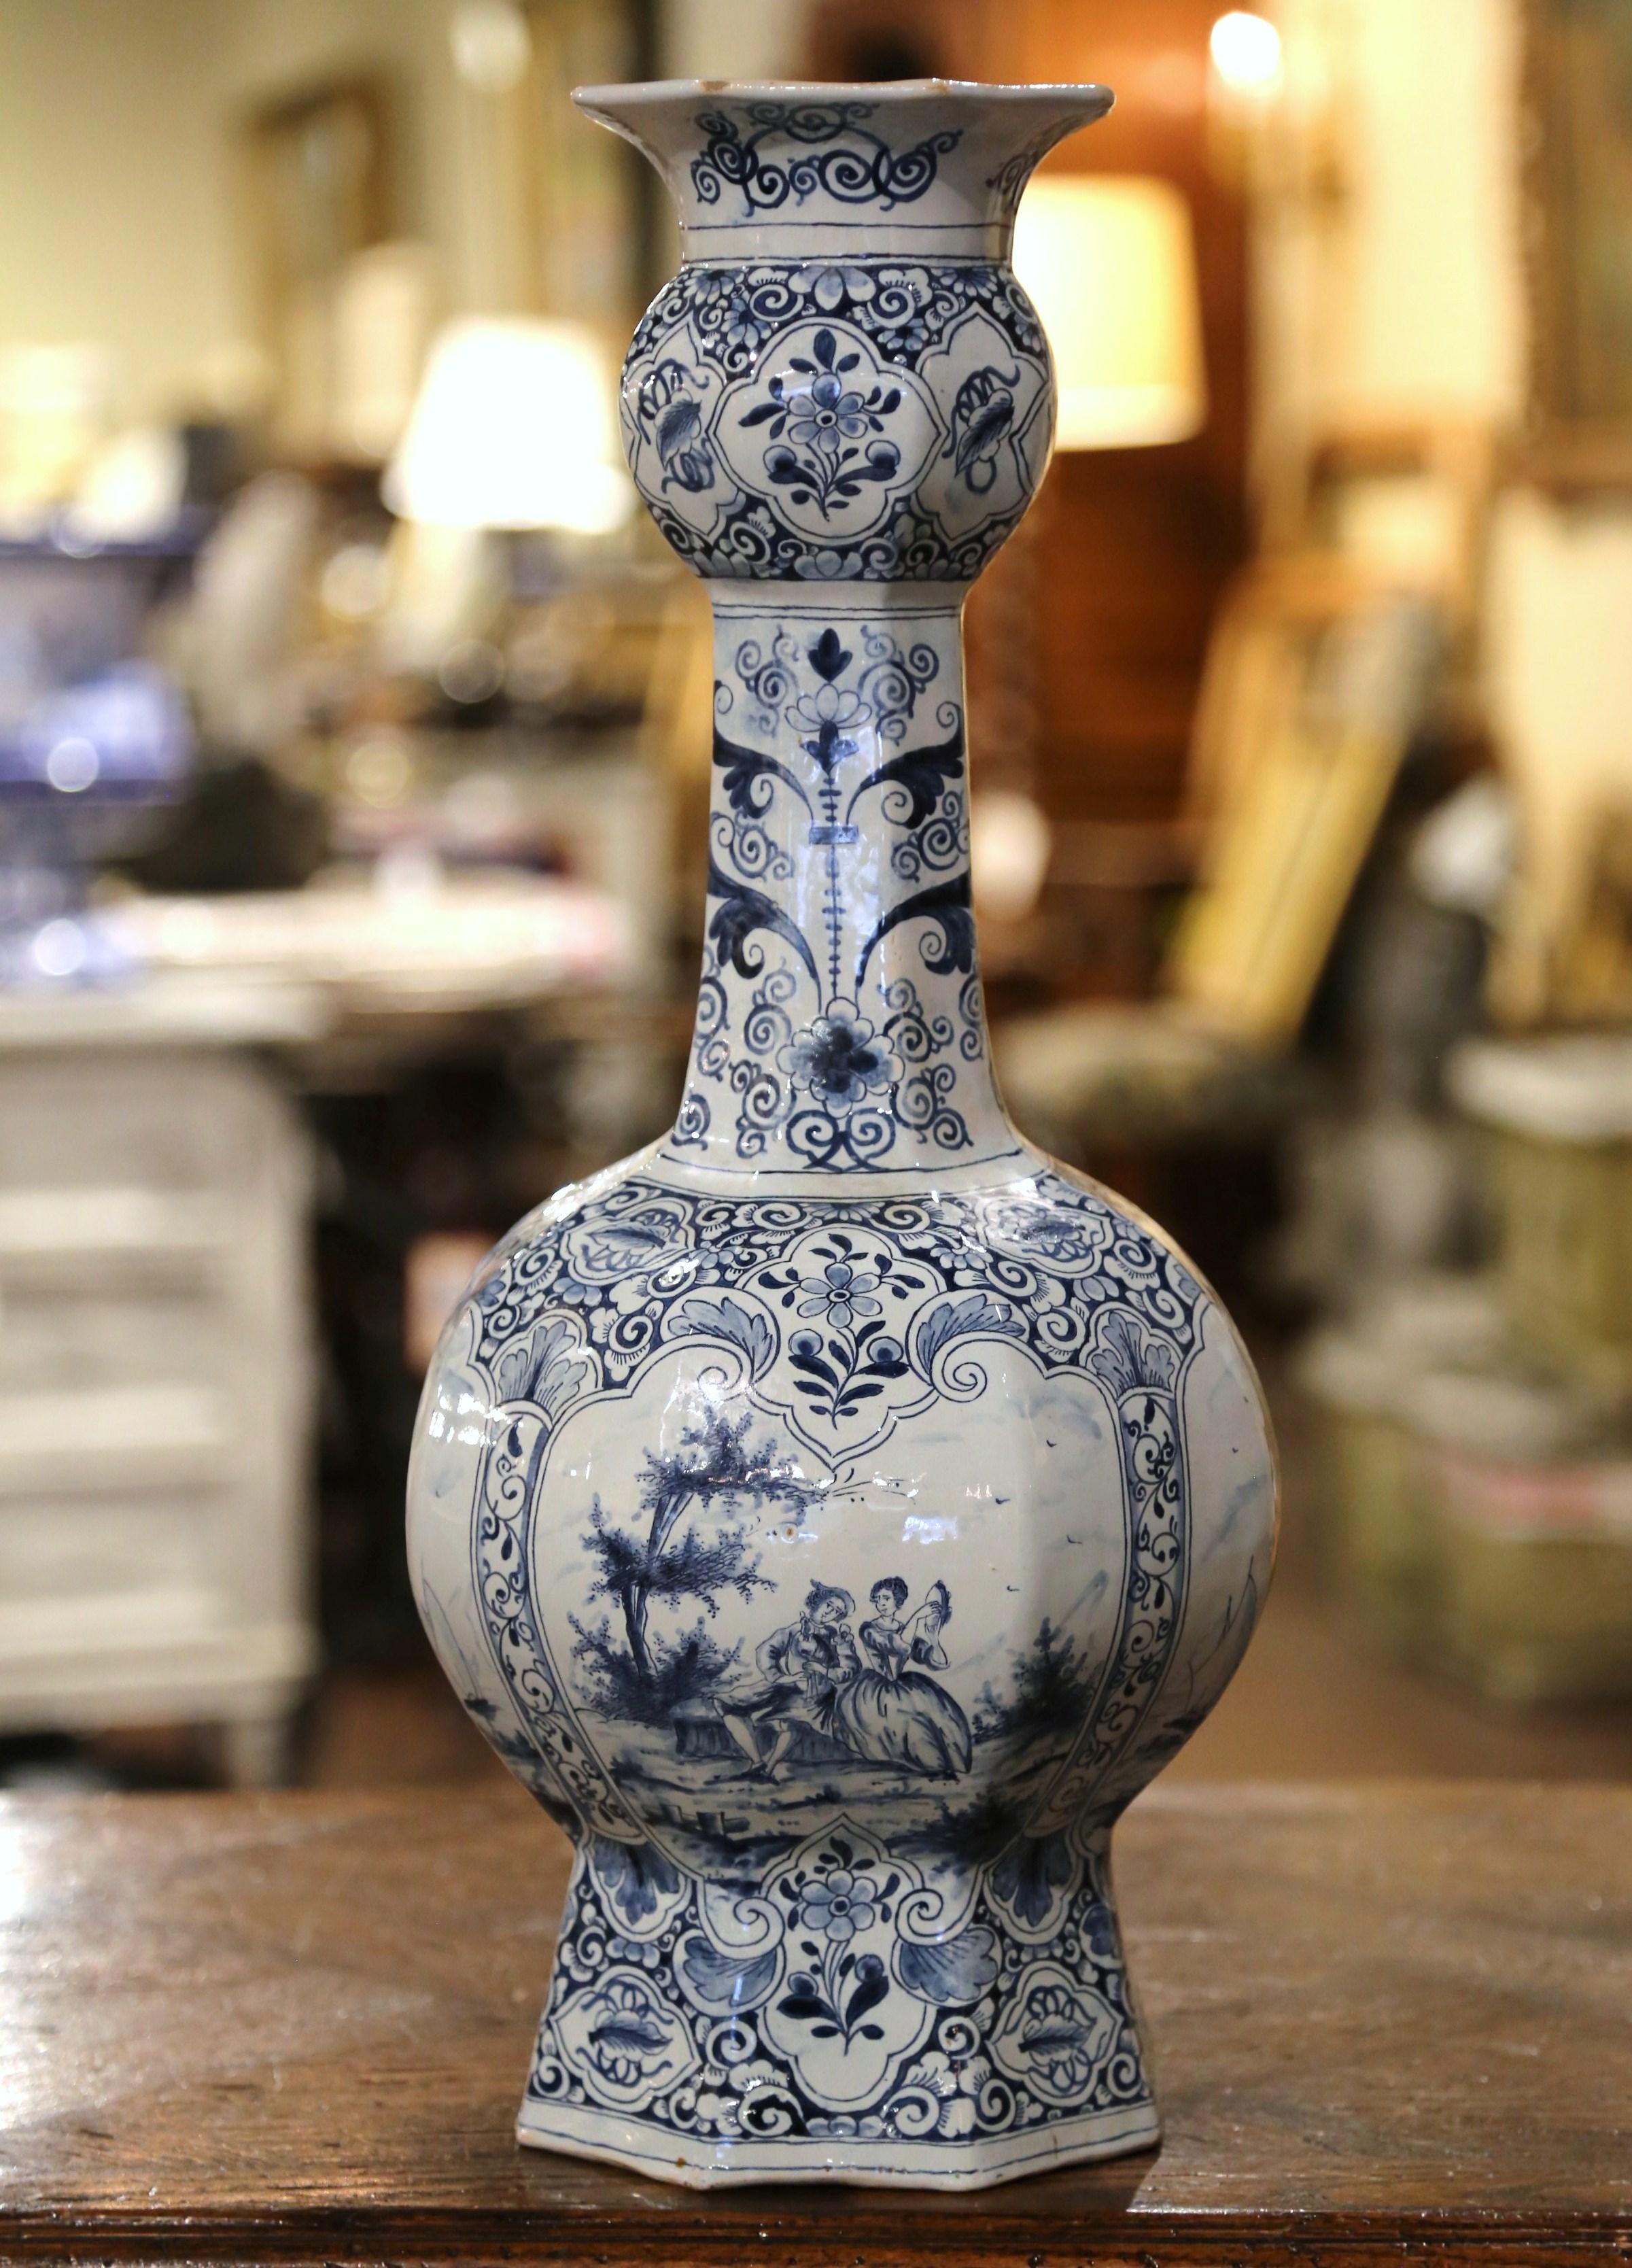 Dekorieren Sie eine Konsole oder ein Buffet mit dieser eleganten antiken Vase. Die hohe Fayence-Vase wurde um 1880 in Frankreich hergestellt und hat eine schöne Form mit einem runden Körper und einem langen, dünnen Hals. Die in der traditionellen